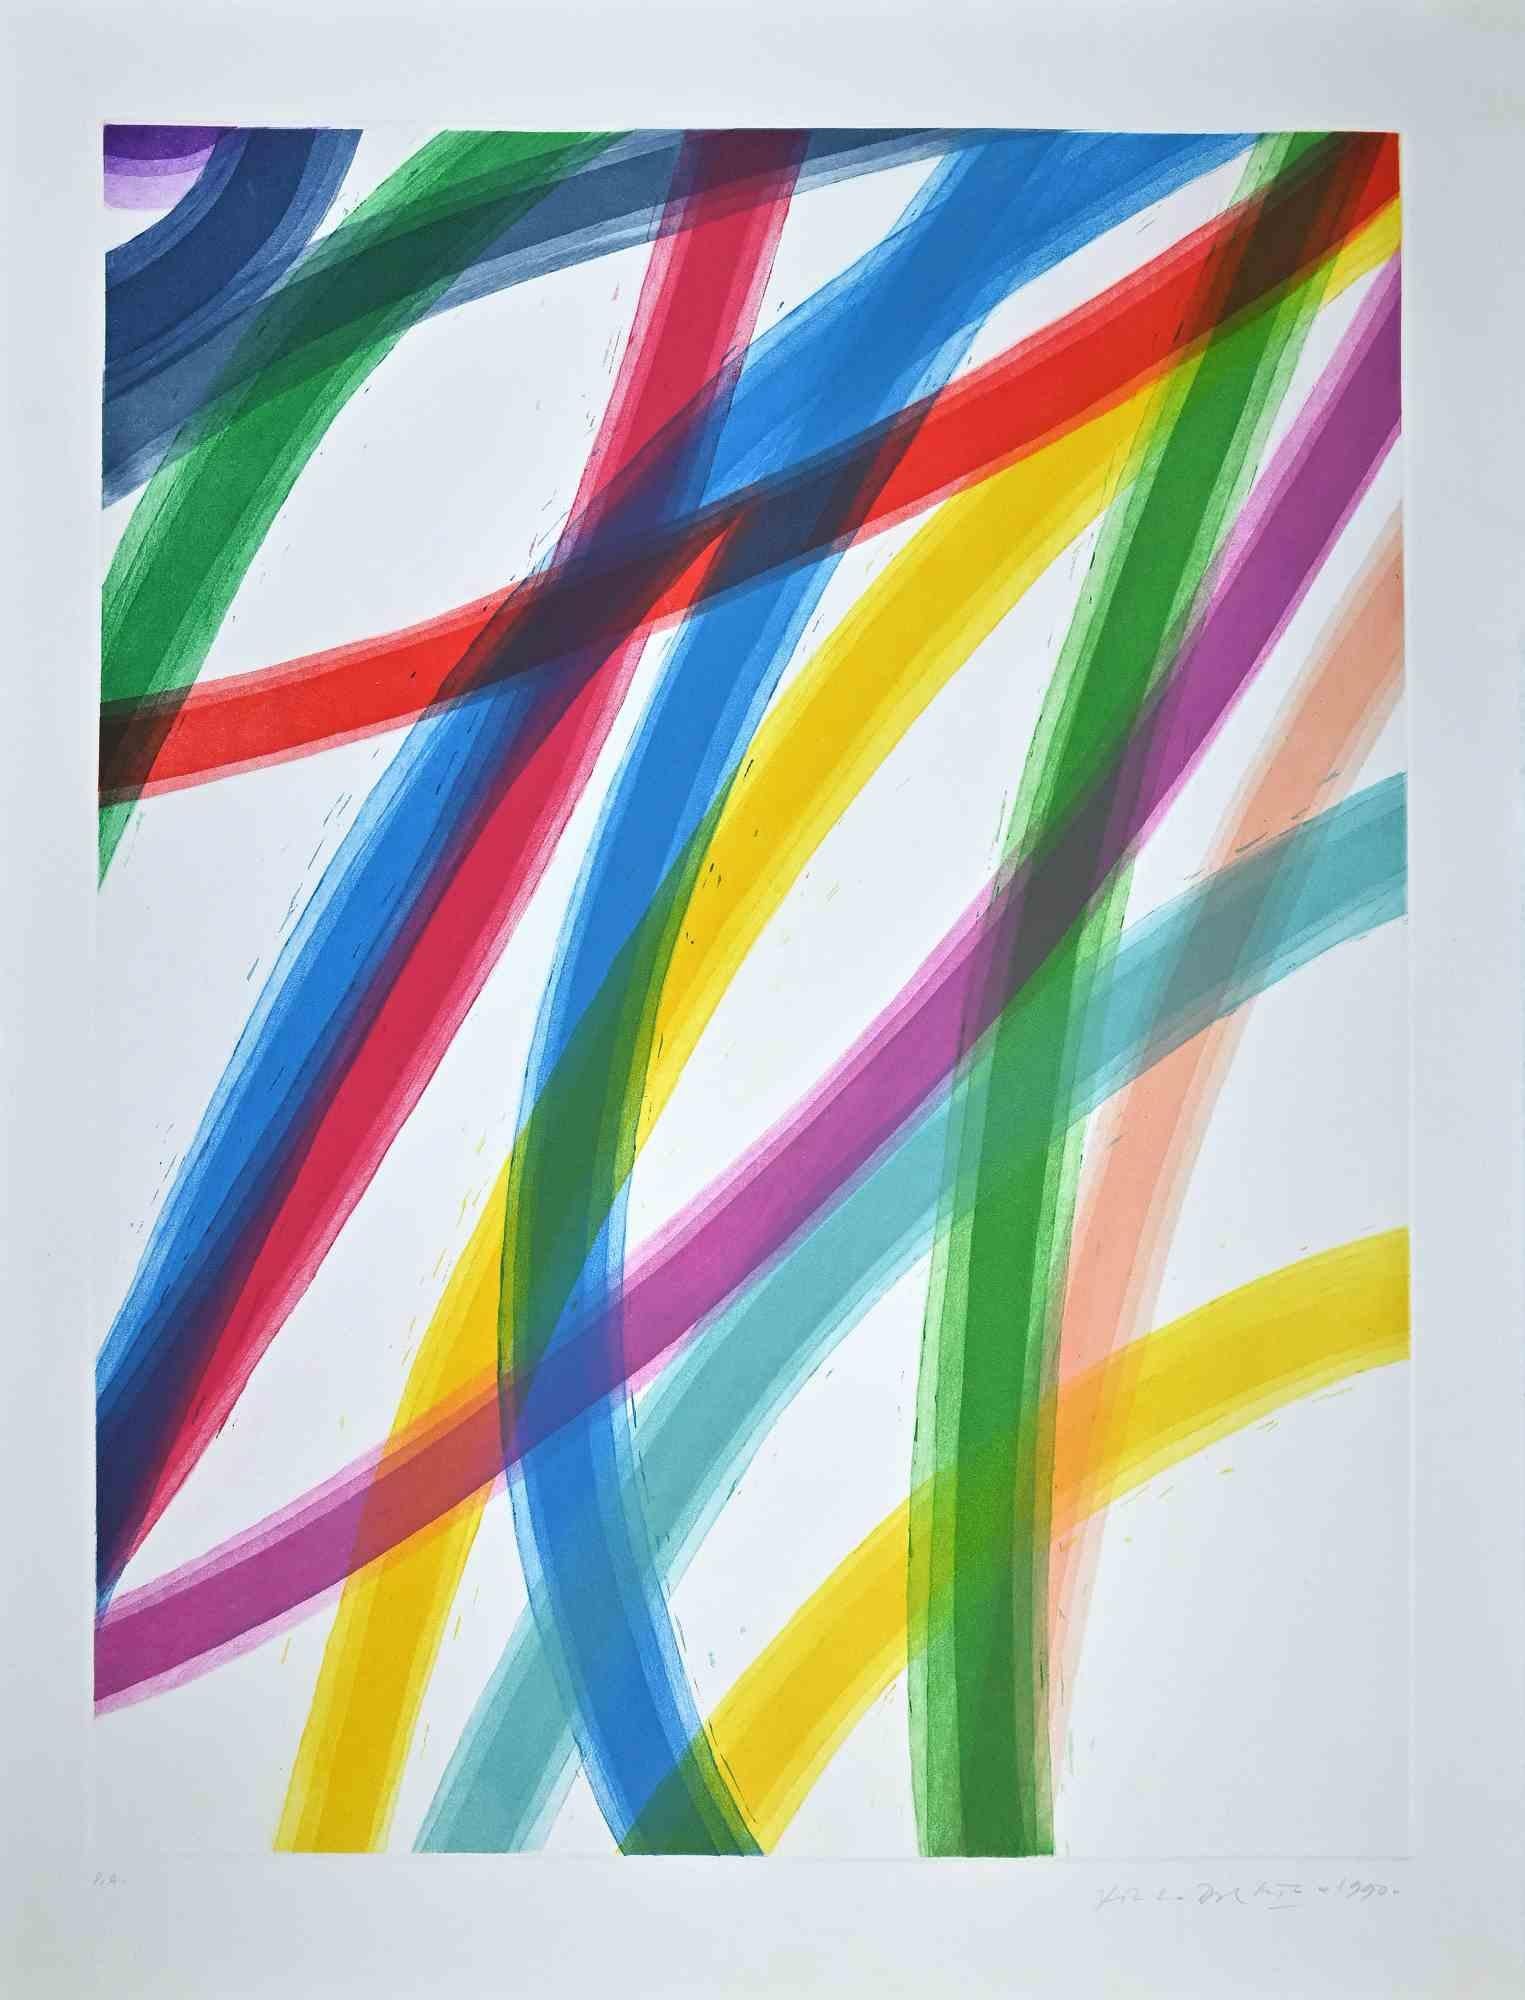 Composition abstraite est une gravure et aquatinte en couleur sur papier, réalisée en 1990 par le maître graphique italien Piero Dorazio (Rome, 1927 - Perugia, 2005).

Signé et daté au crayon " Piero Dorazio 1990 " dans la marge inférieure